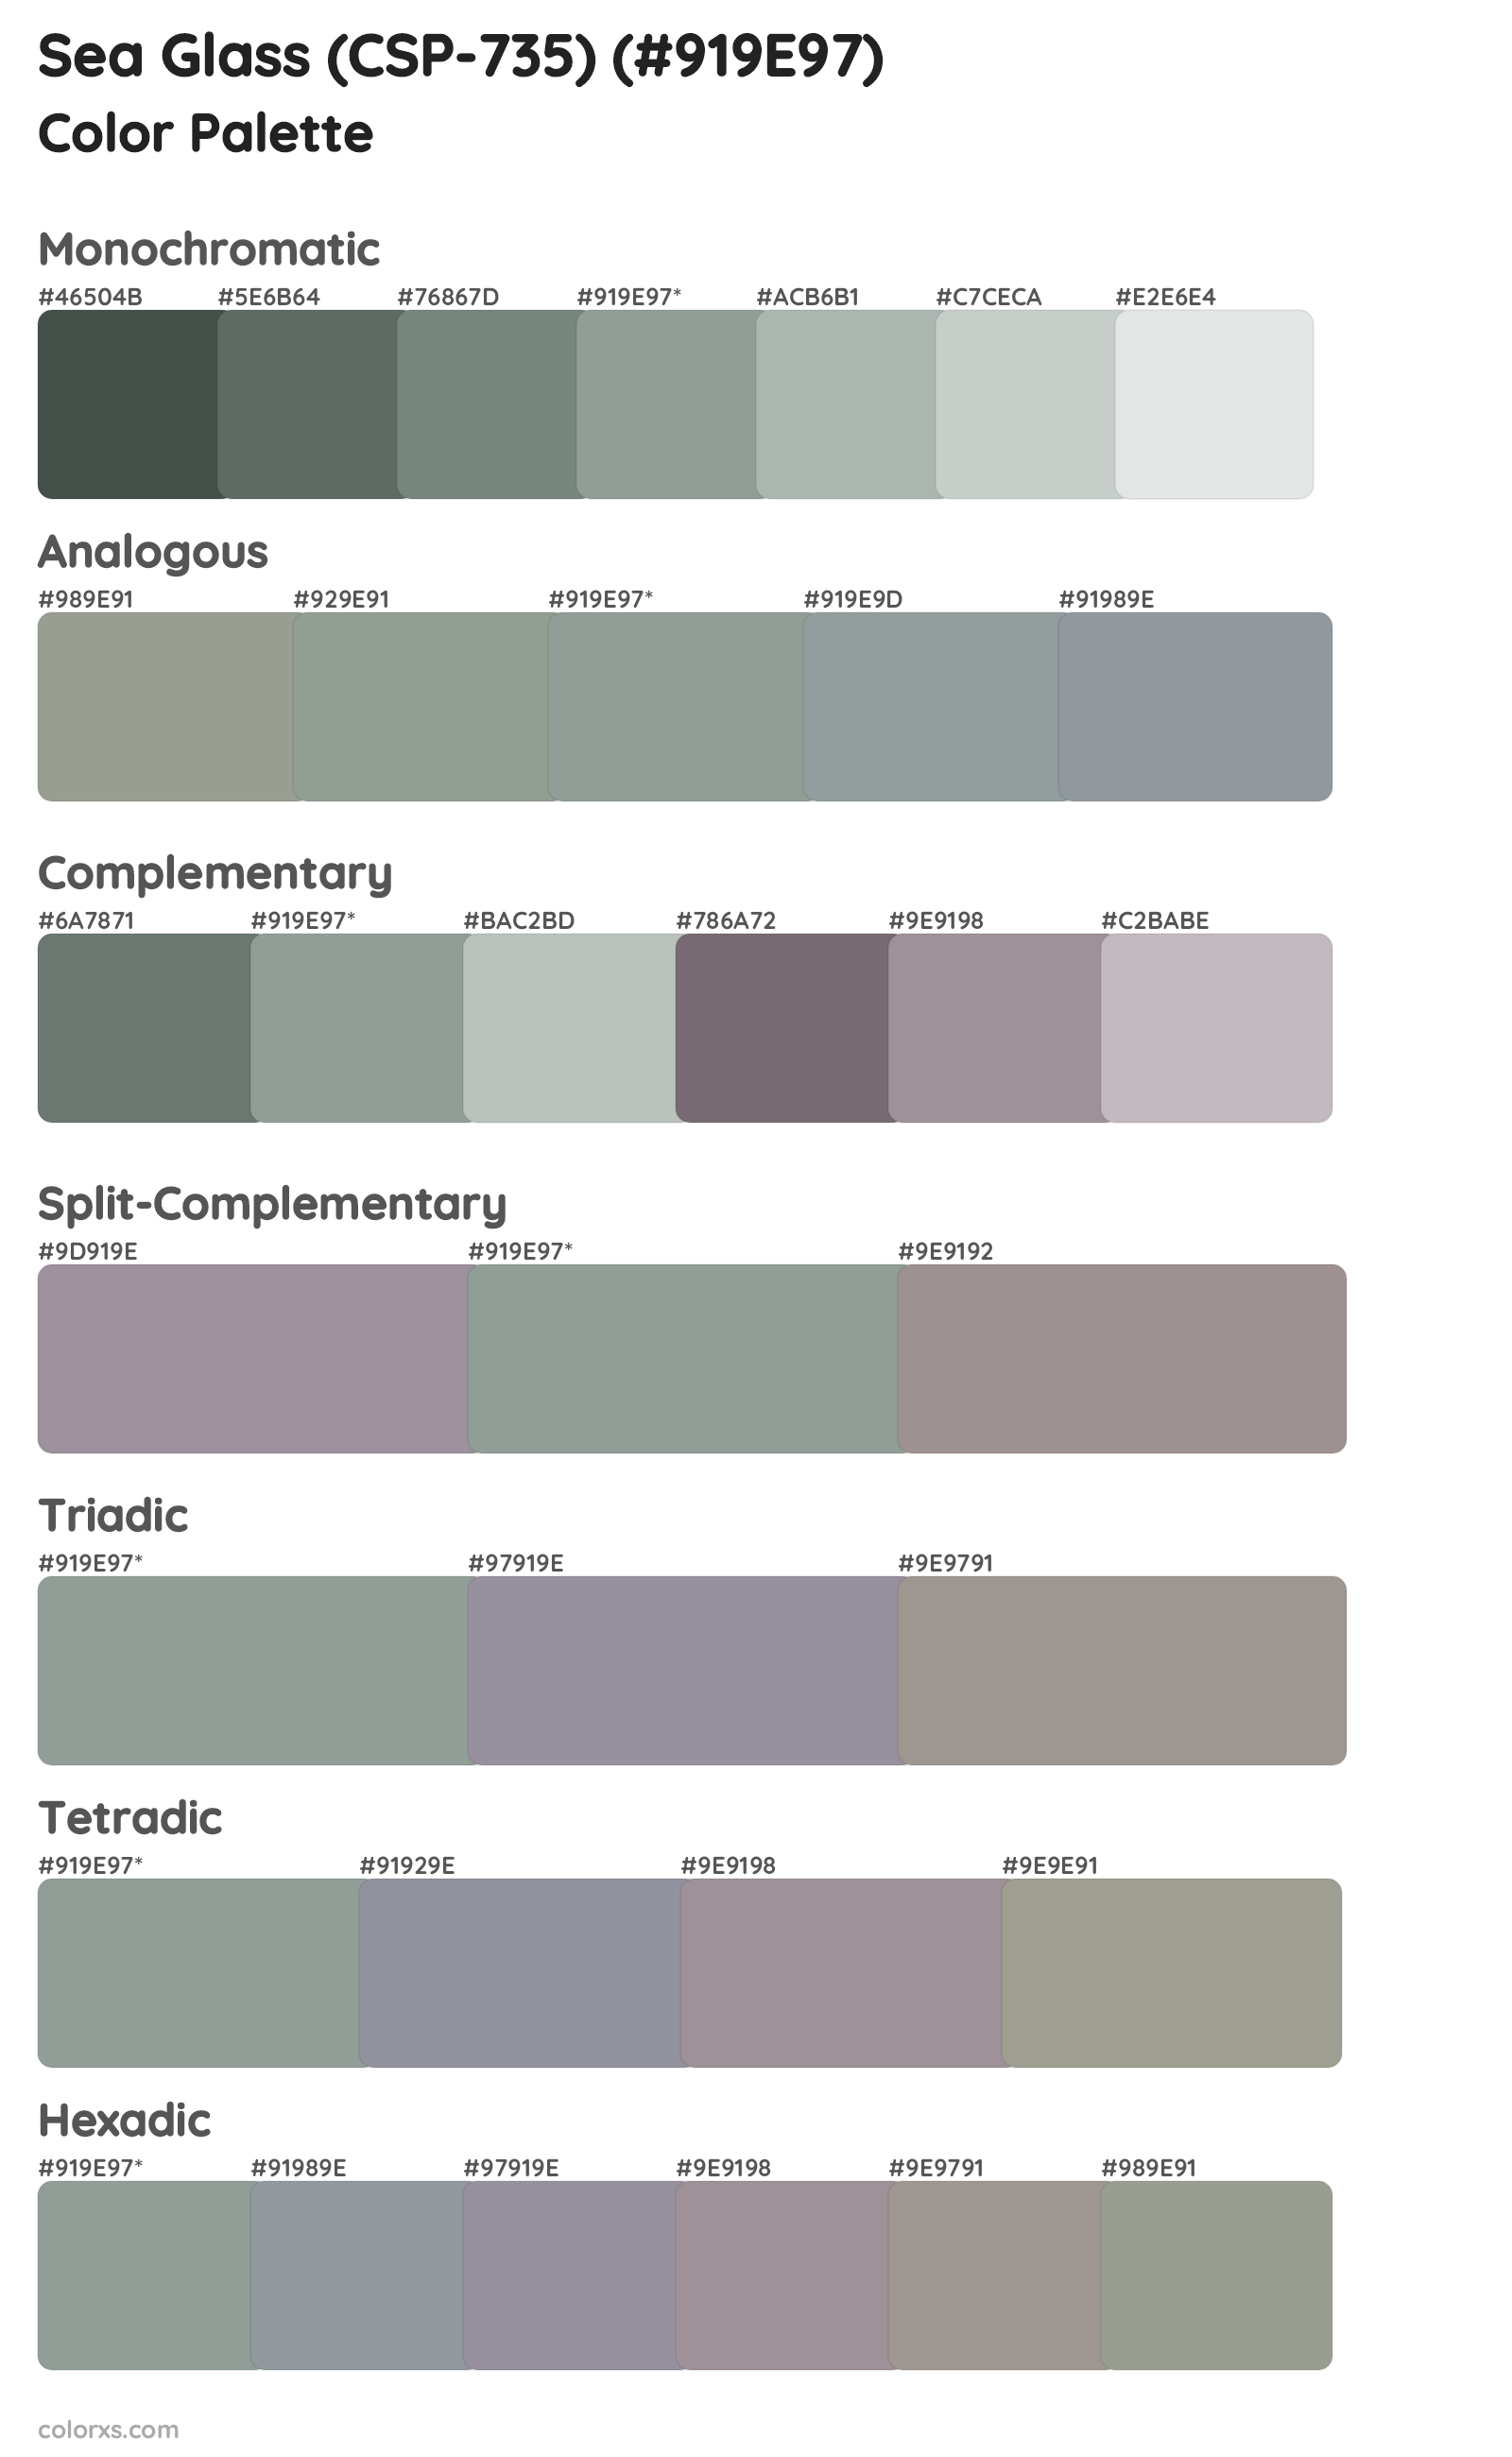 Sea Glass (CSP-735) Color Scheme Palettes